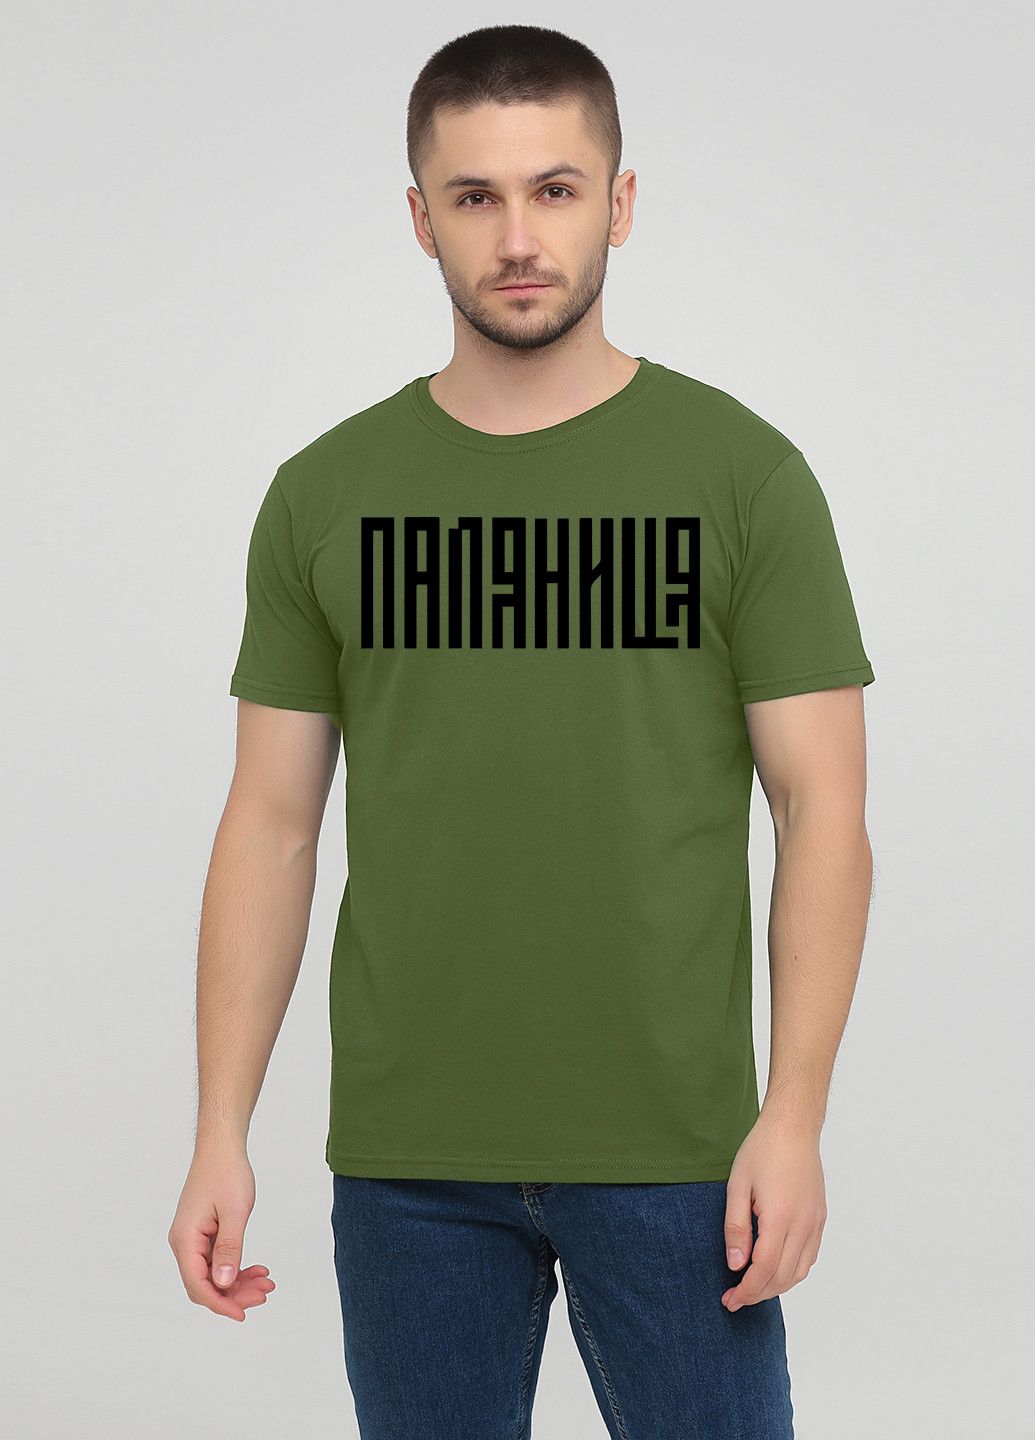 Оливковая футболка мужская м385-24 оливковая Malta